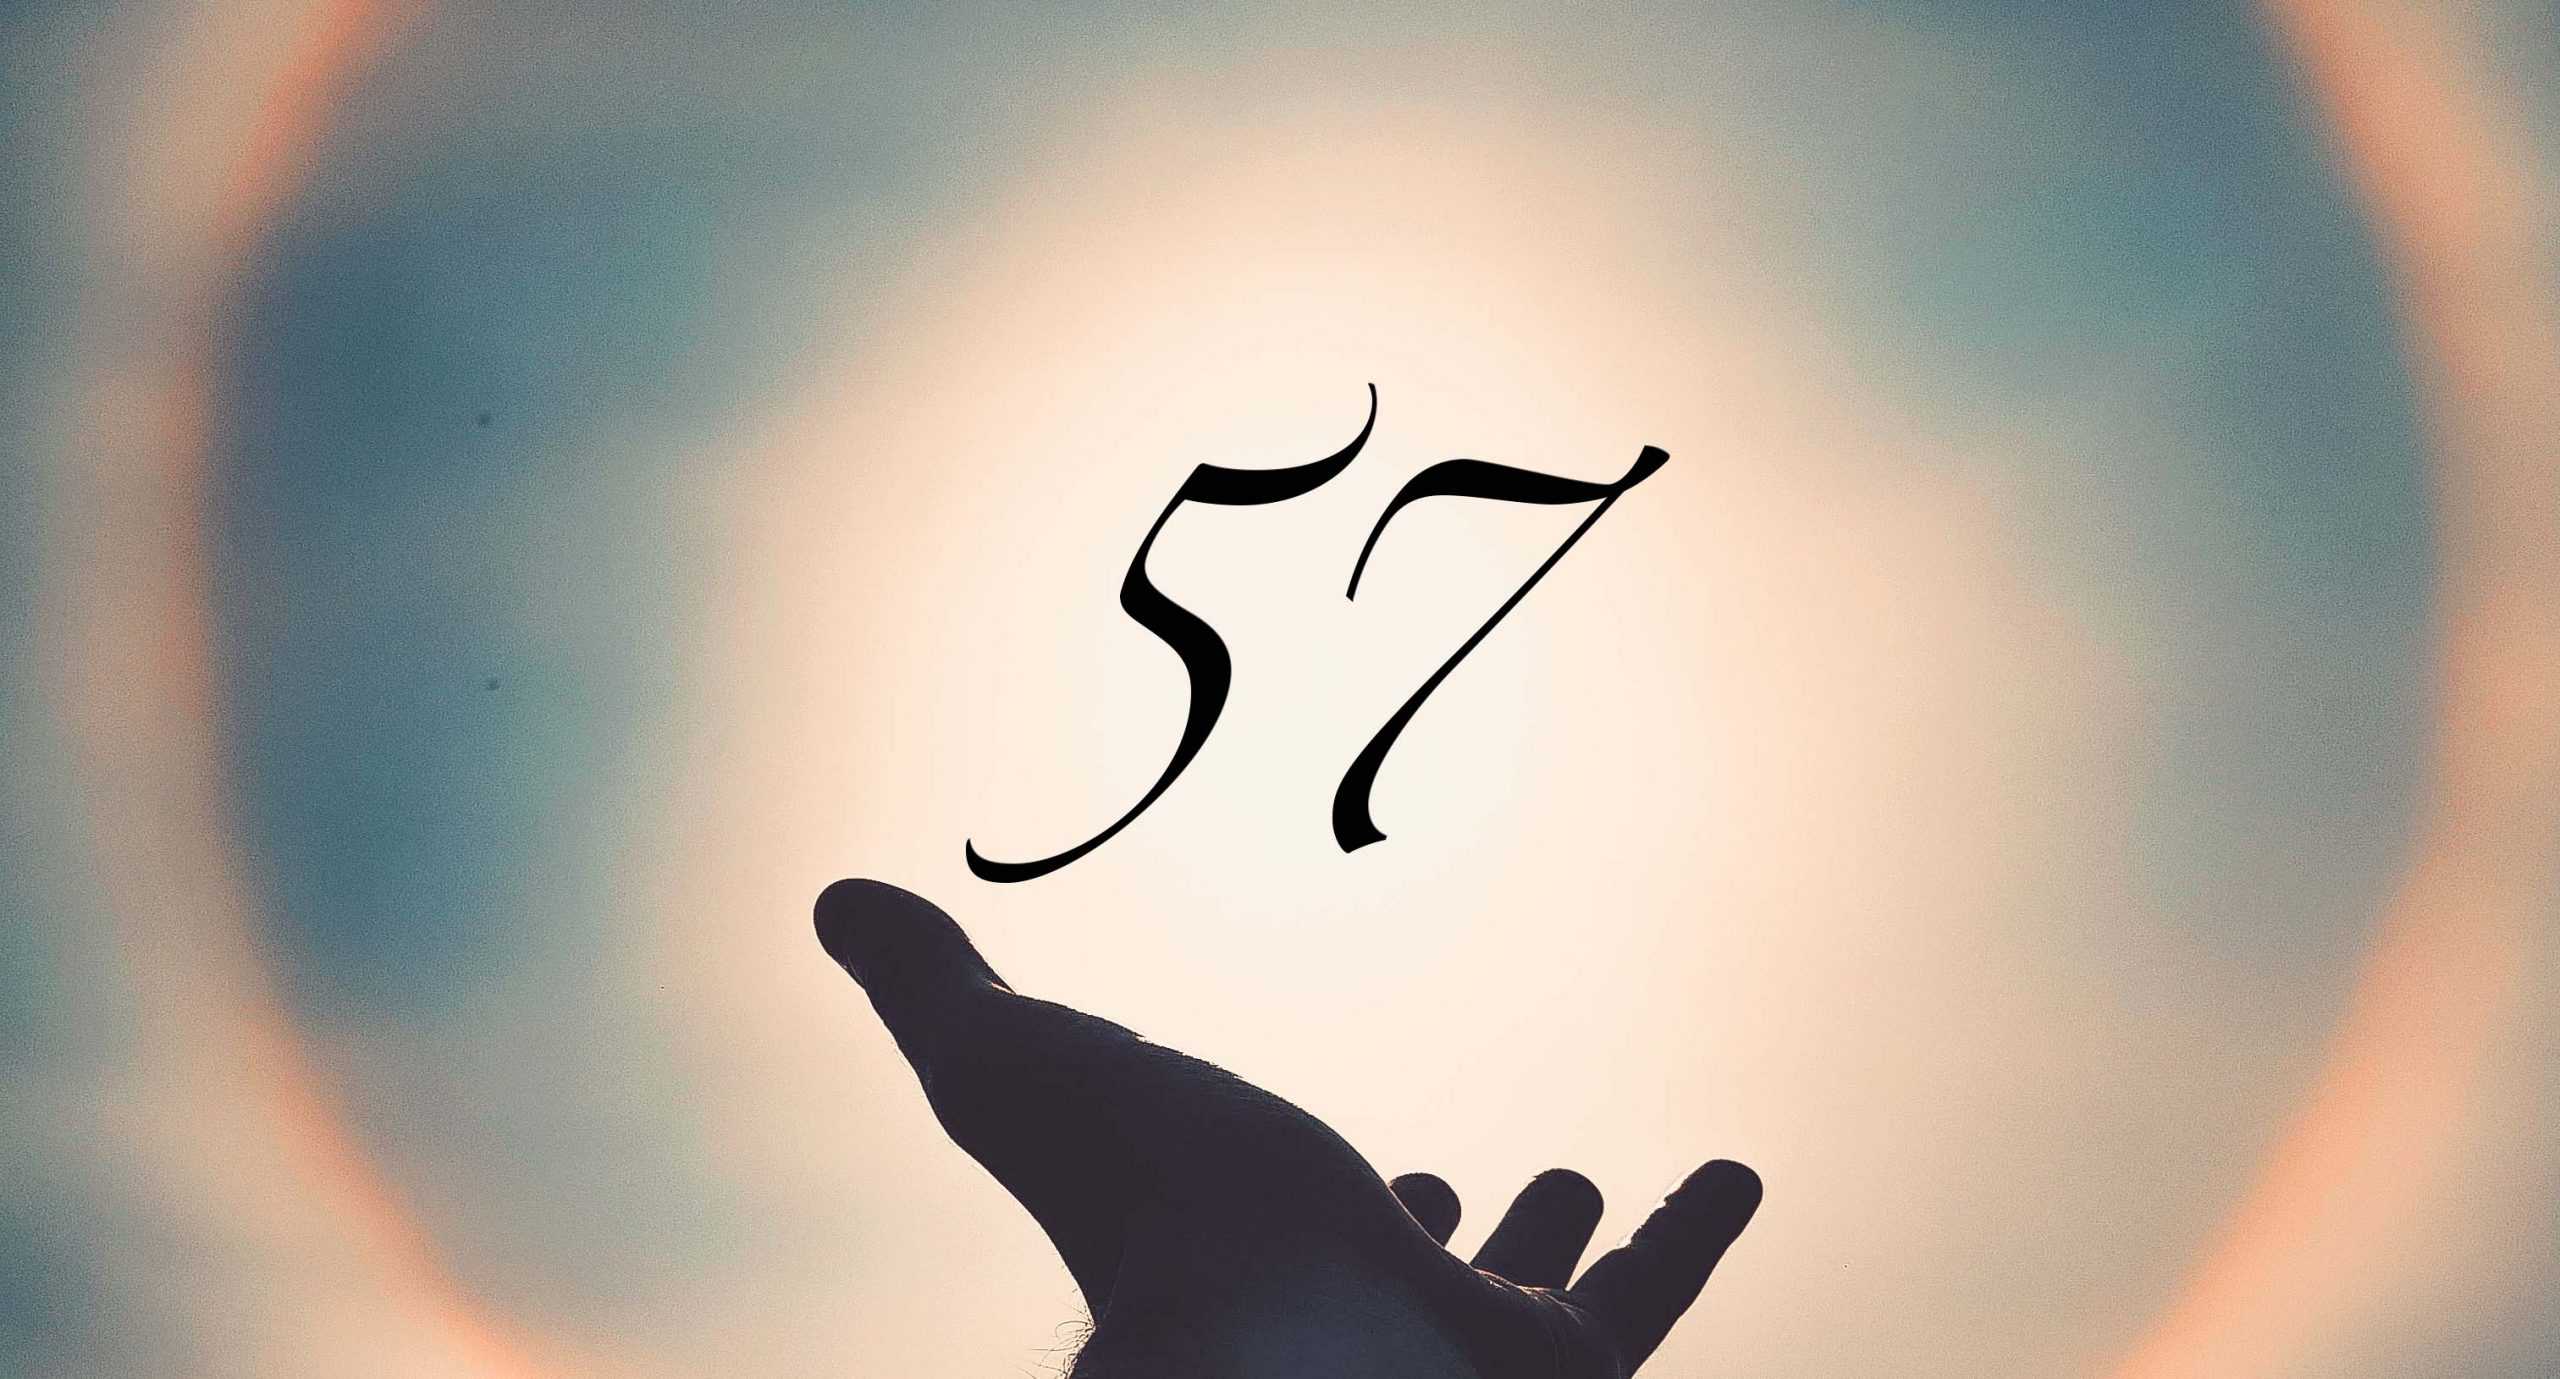 Signification du nombre 57